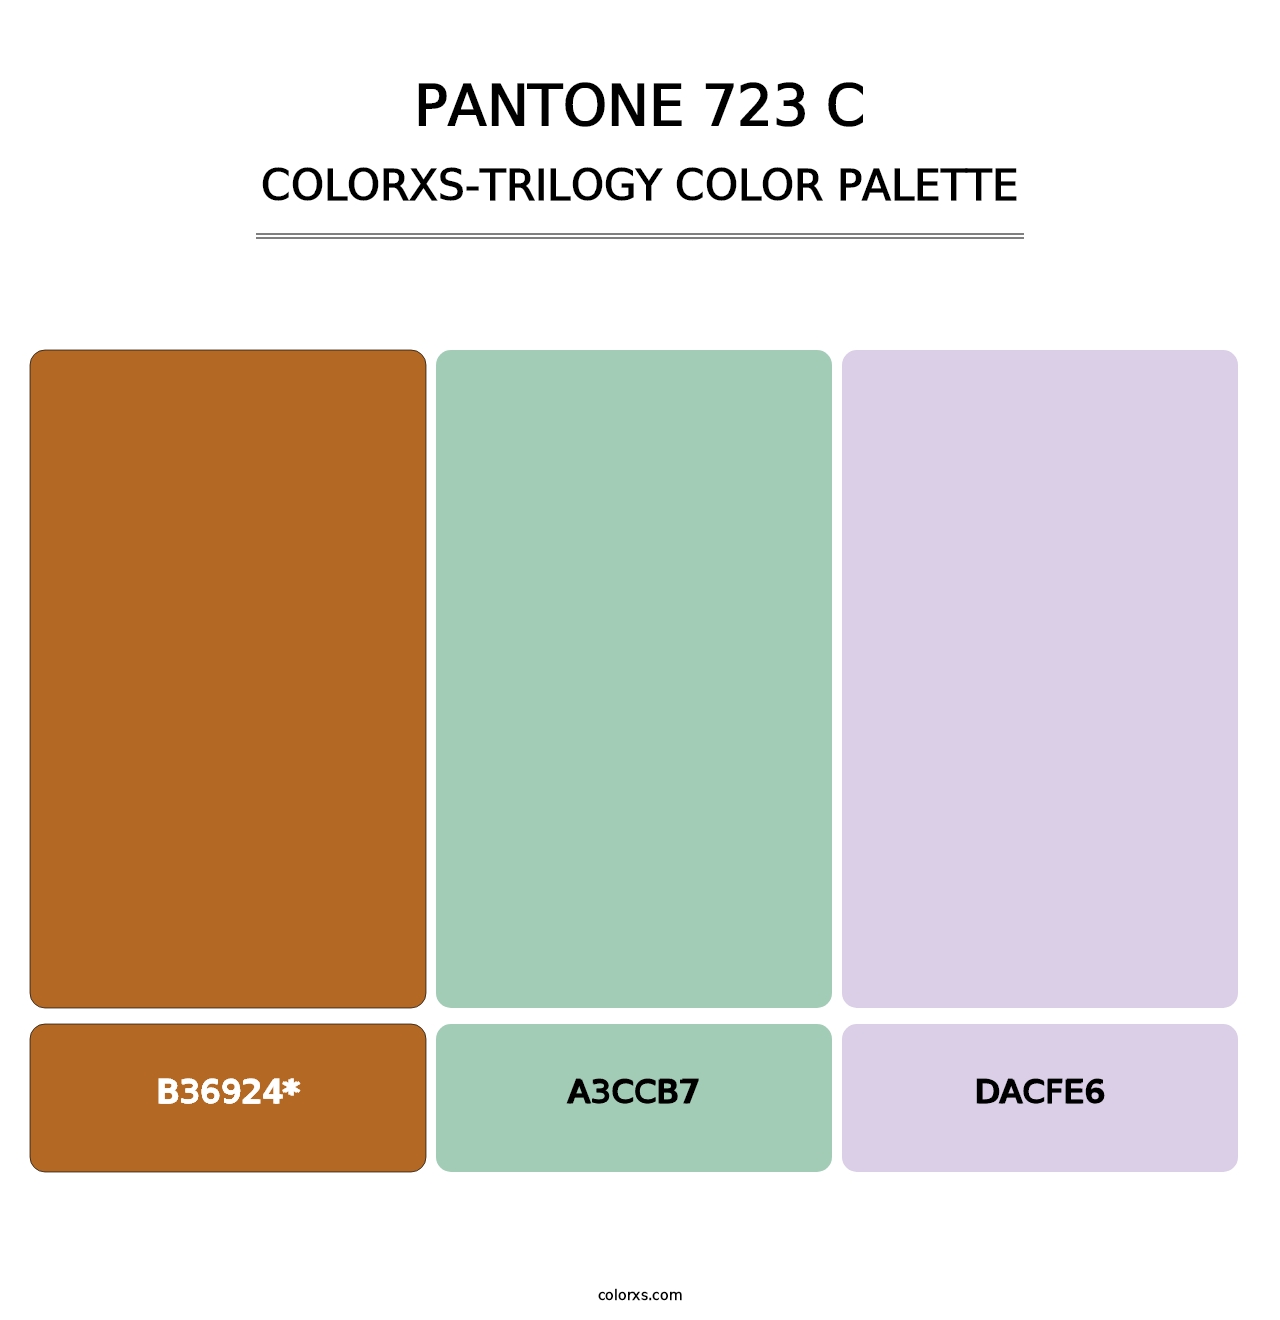 PANTONE 723 C - Colorxs Trilogy Palette